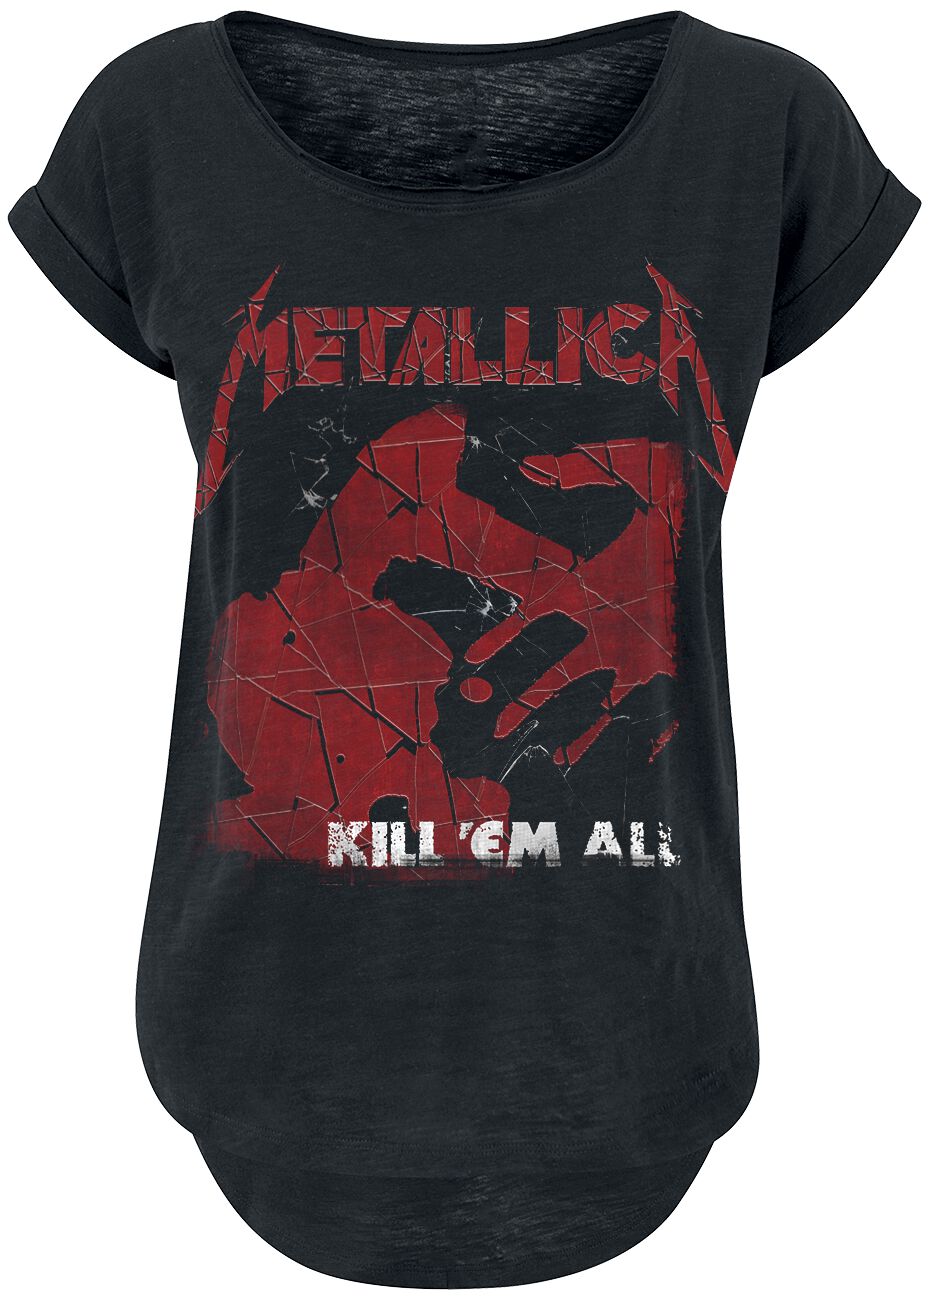 T-Shirt Manches courtes de Metallica - Kill 'Em All Shattered - S à XXL - pour Femme - noir